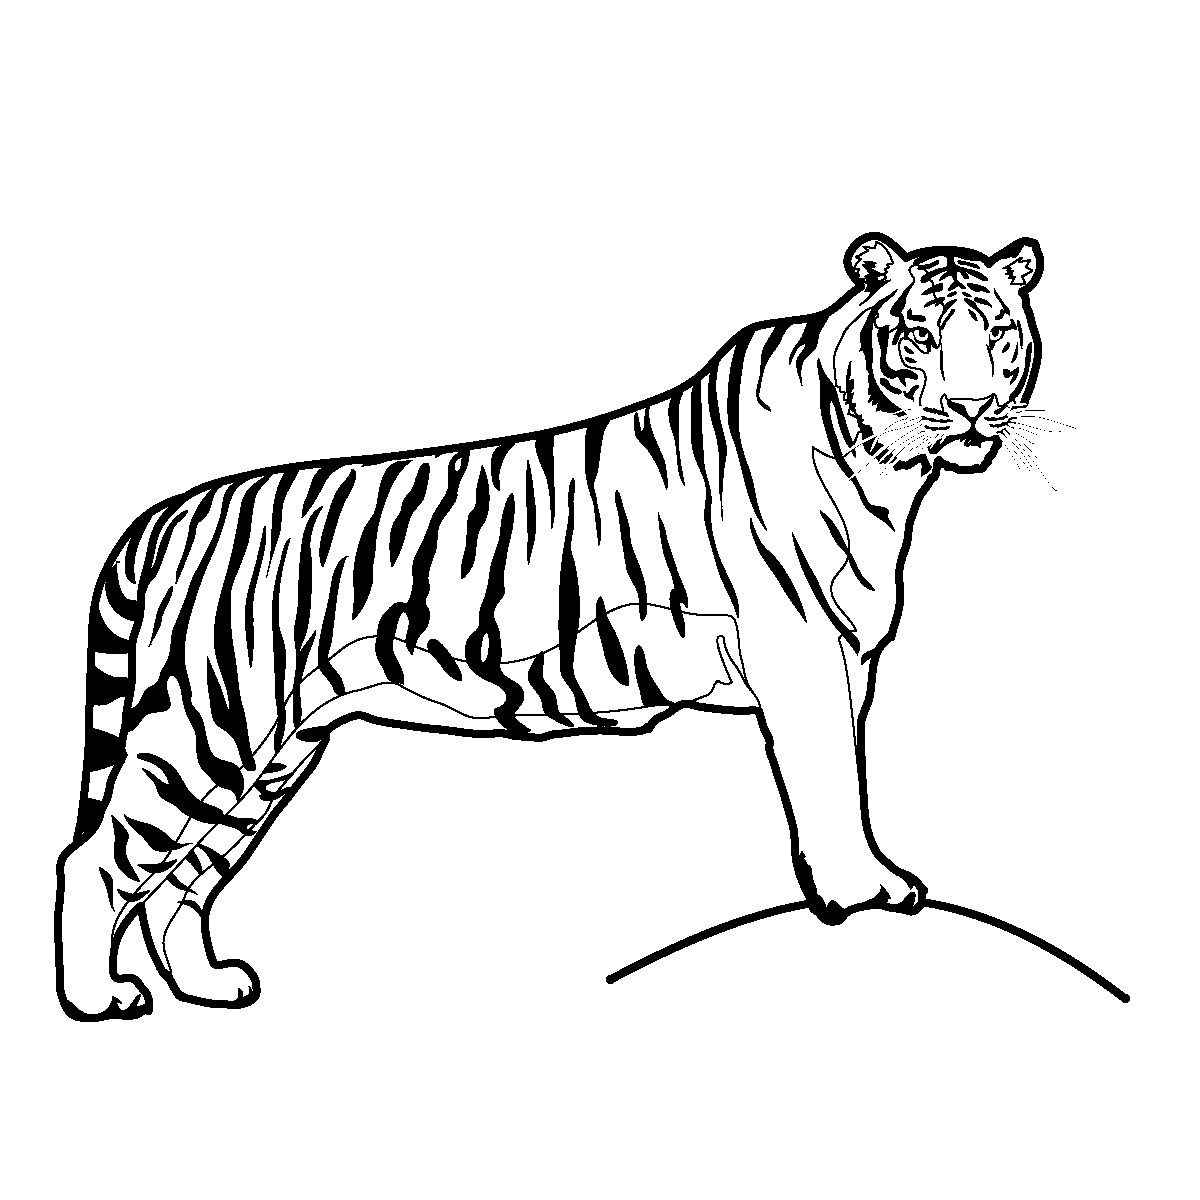 Tiger clip art black and white